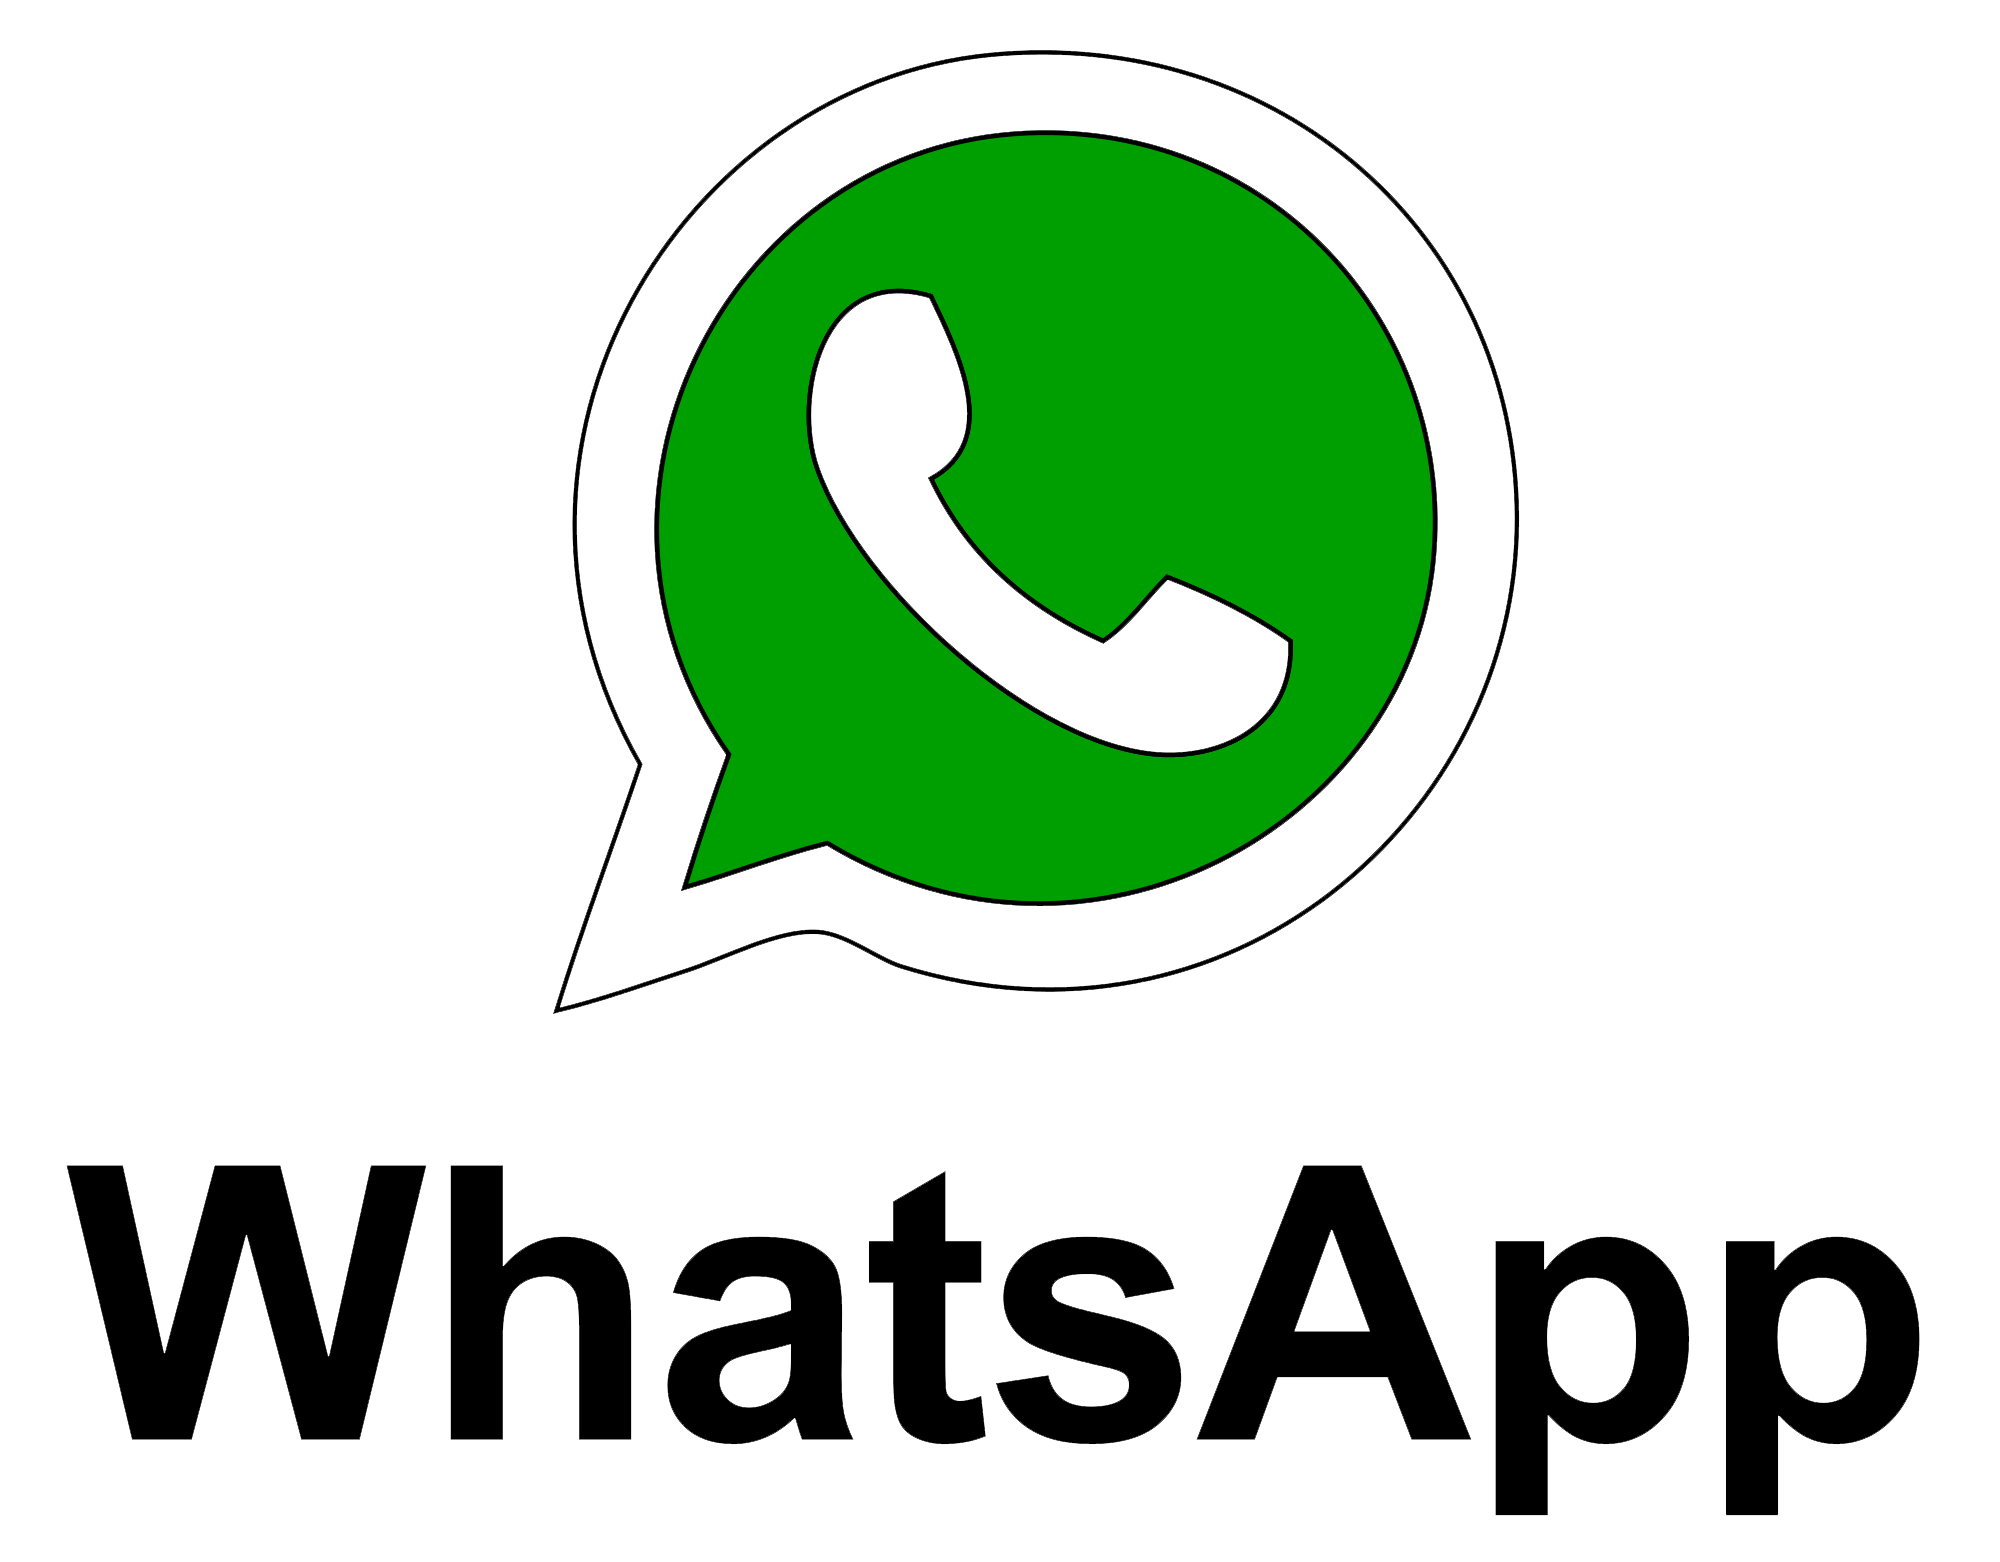 whatsapp messanger